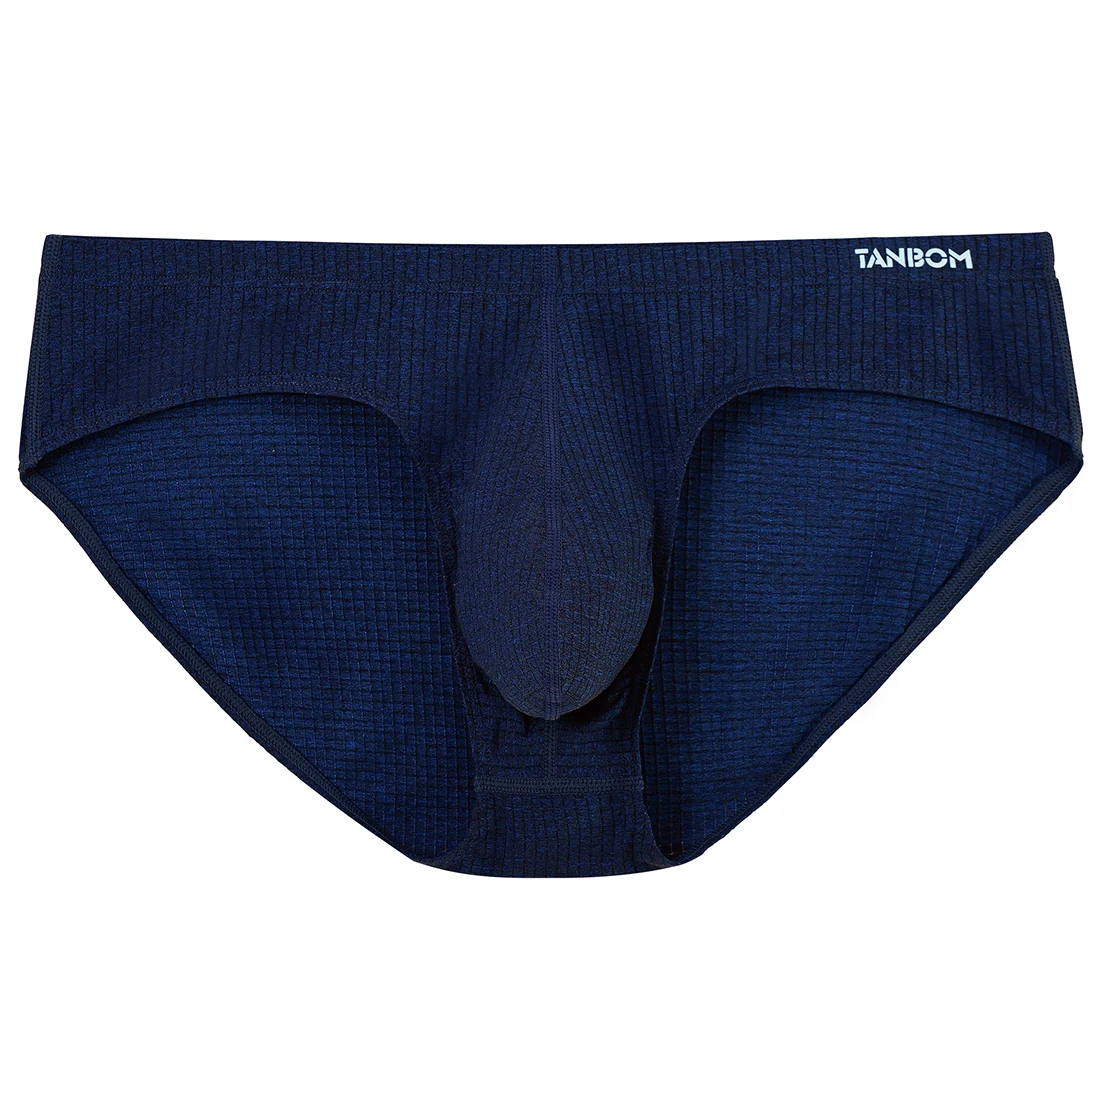 Men's Briefs Sexy Men Nylon Comfortable Breathable Underwear Male Panties Solid Color